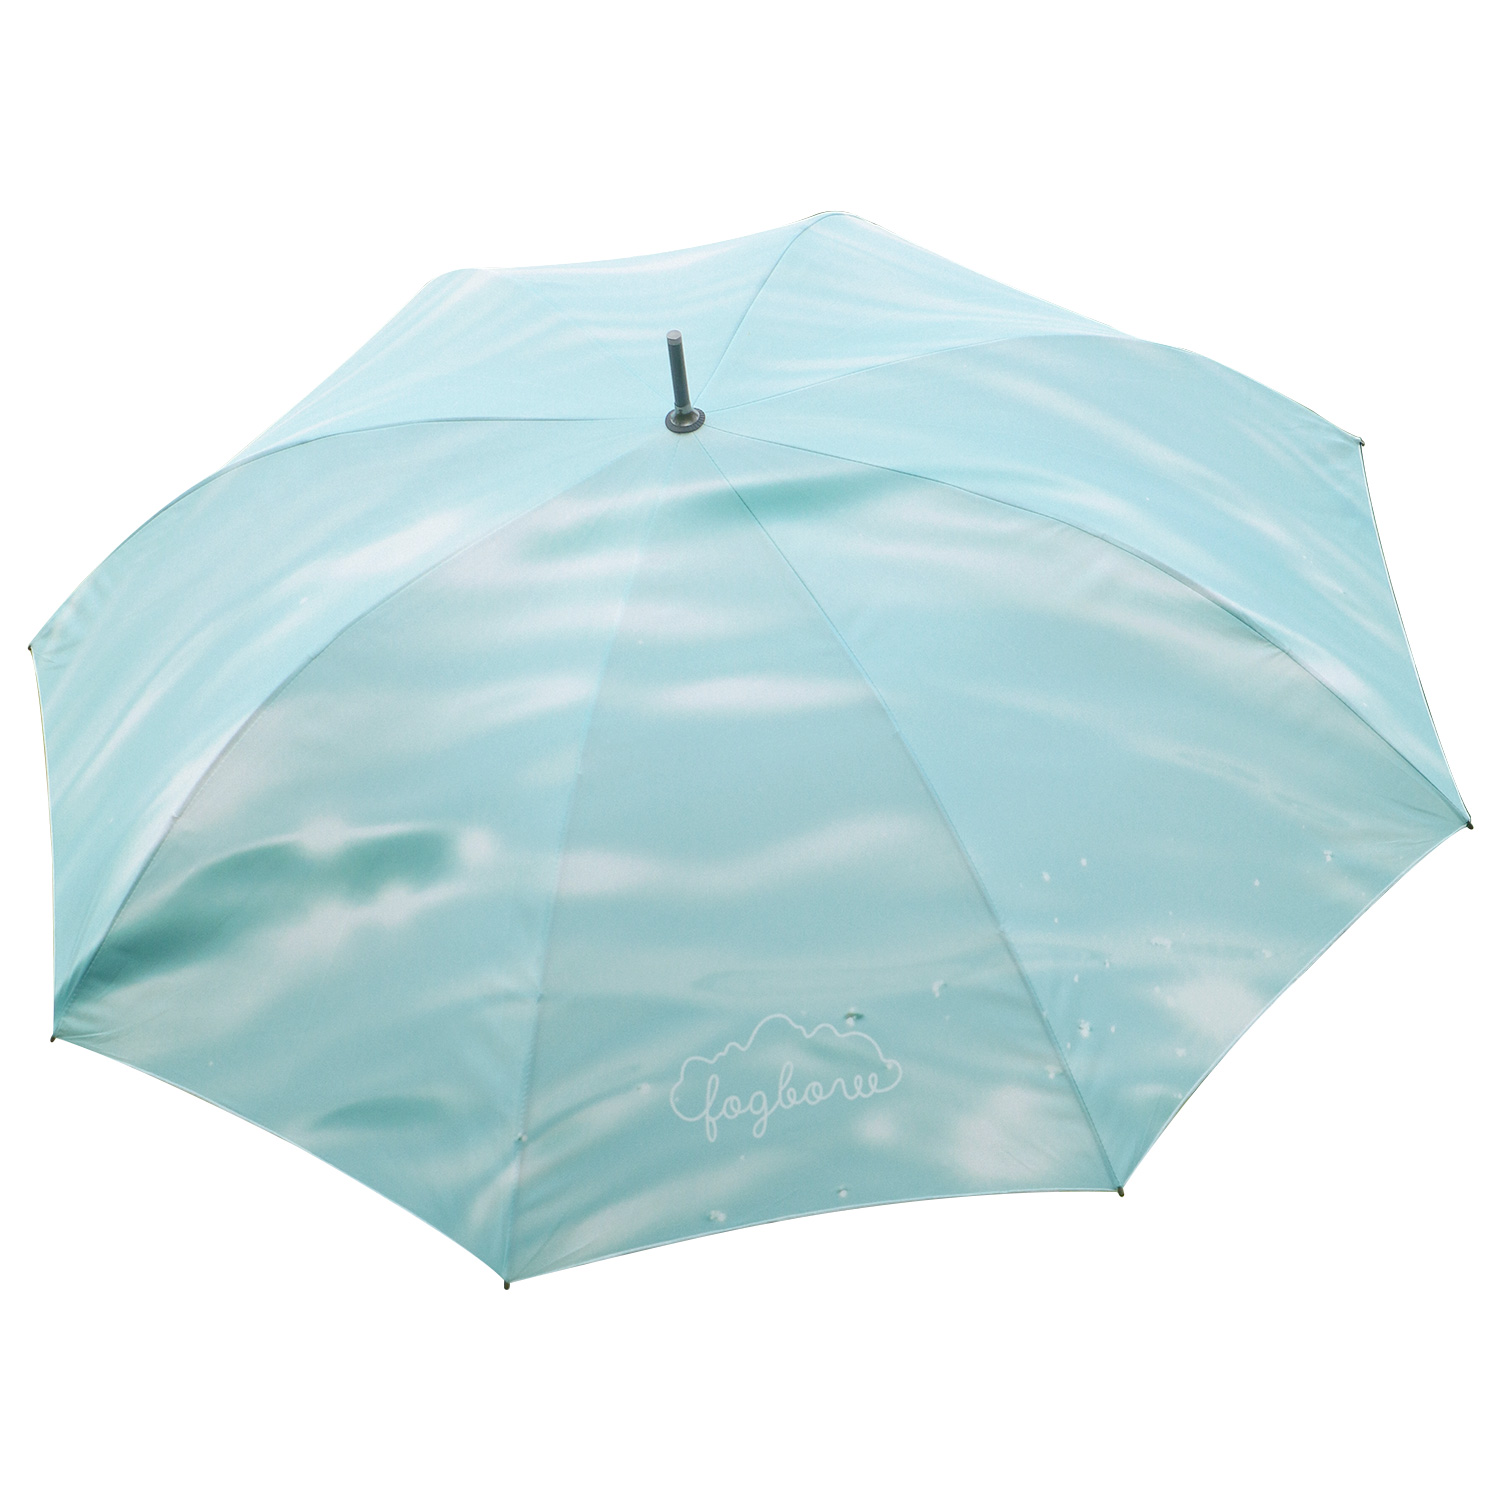 FOGBOWmorning umbrella